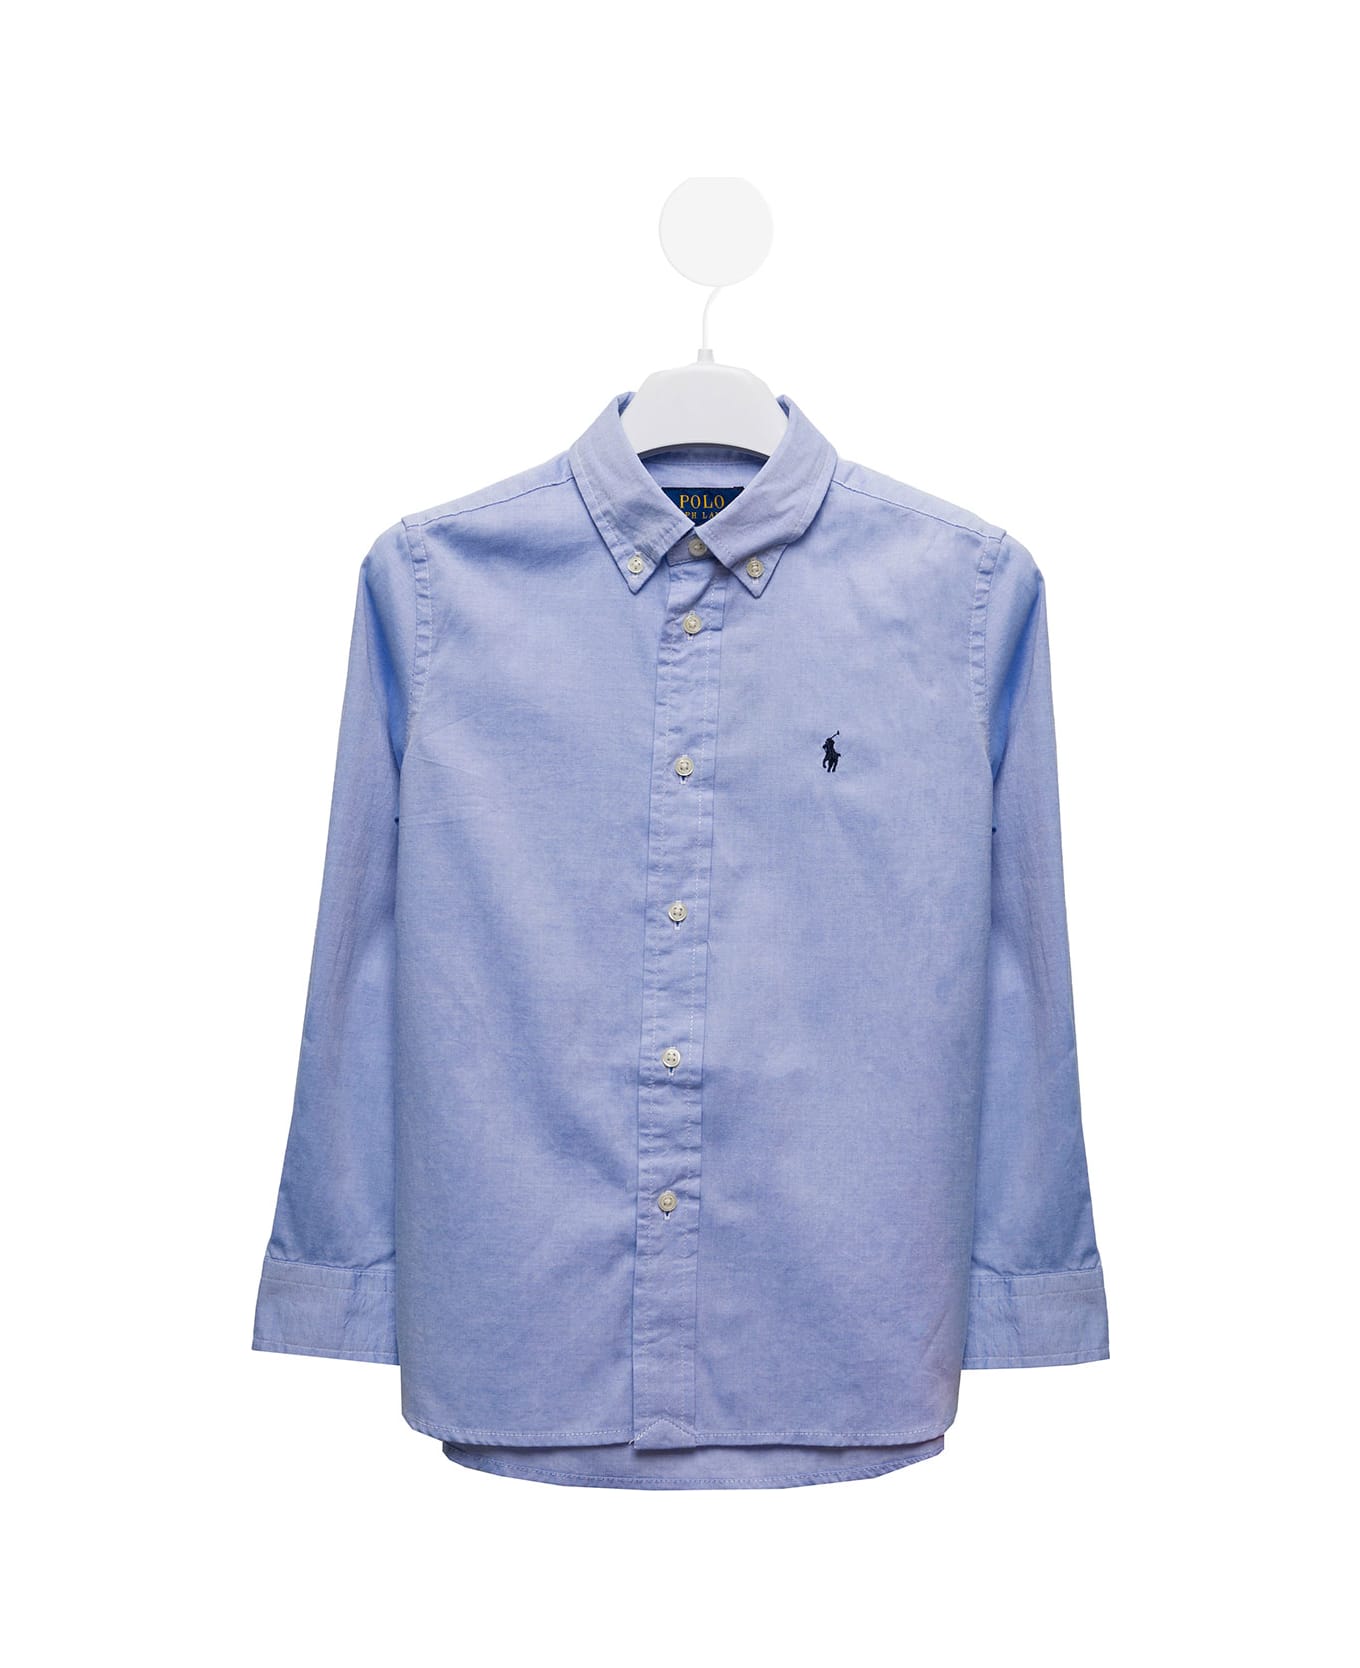 Ralph Lauren Light Blue Cotton Poplin Shirt With Logo Polo Ralph Lauren Kids Boy - LIGHT BLUE